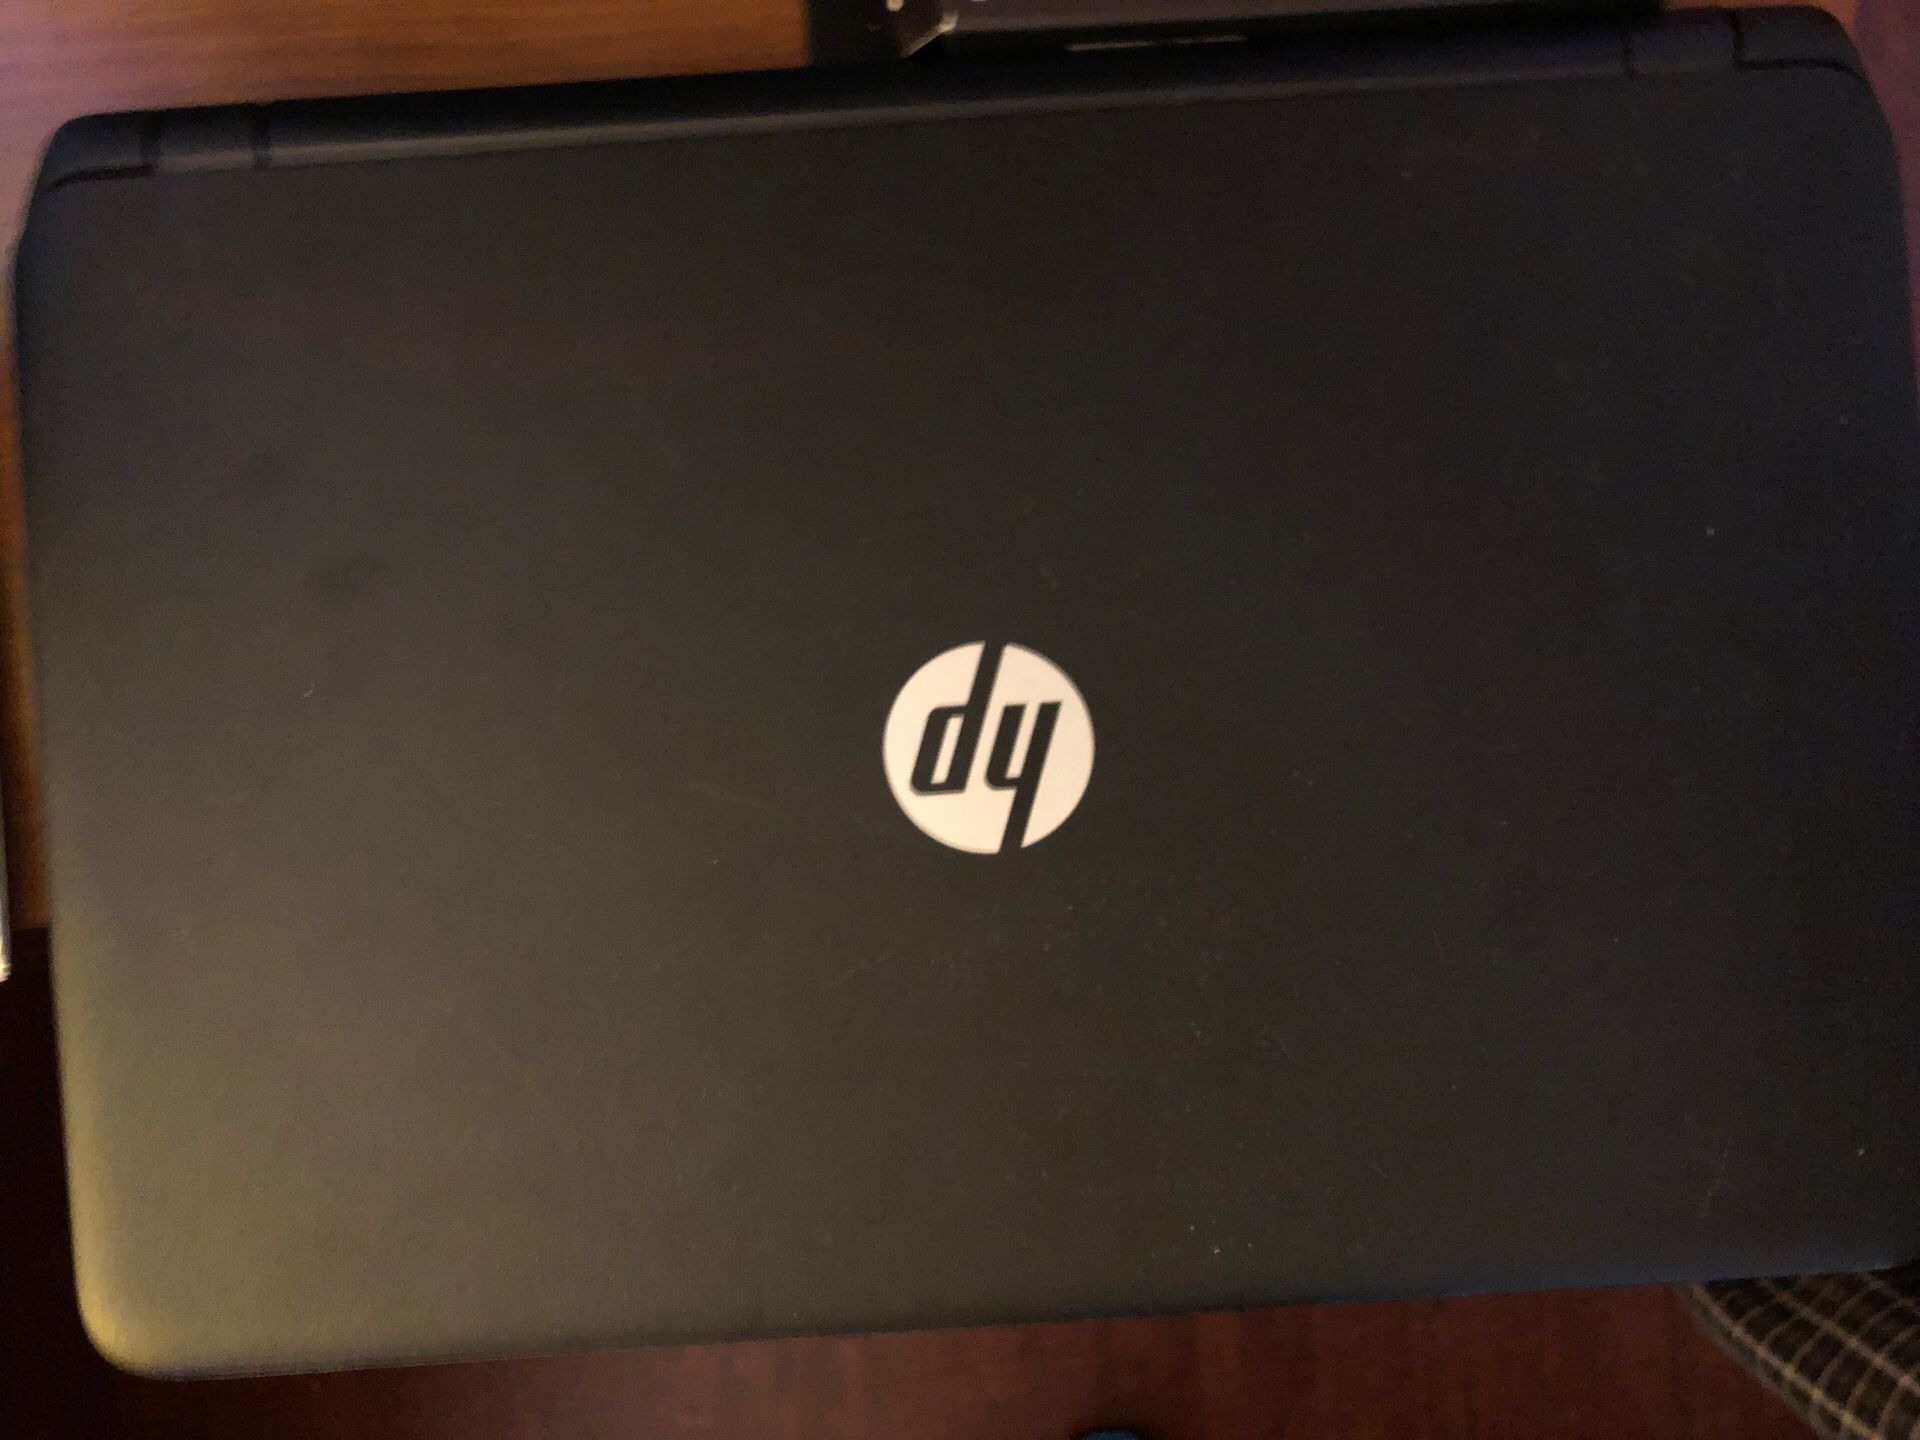 HP Notebook 15 Laptop